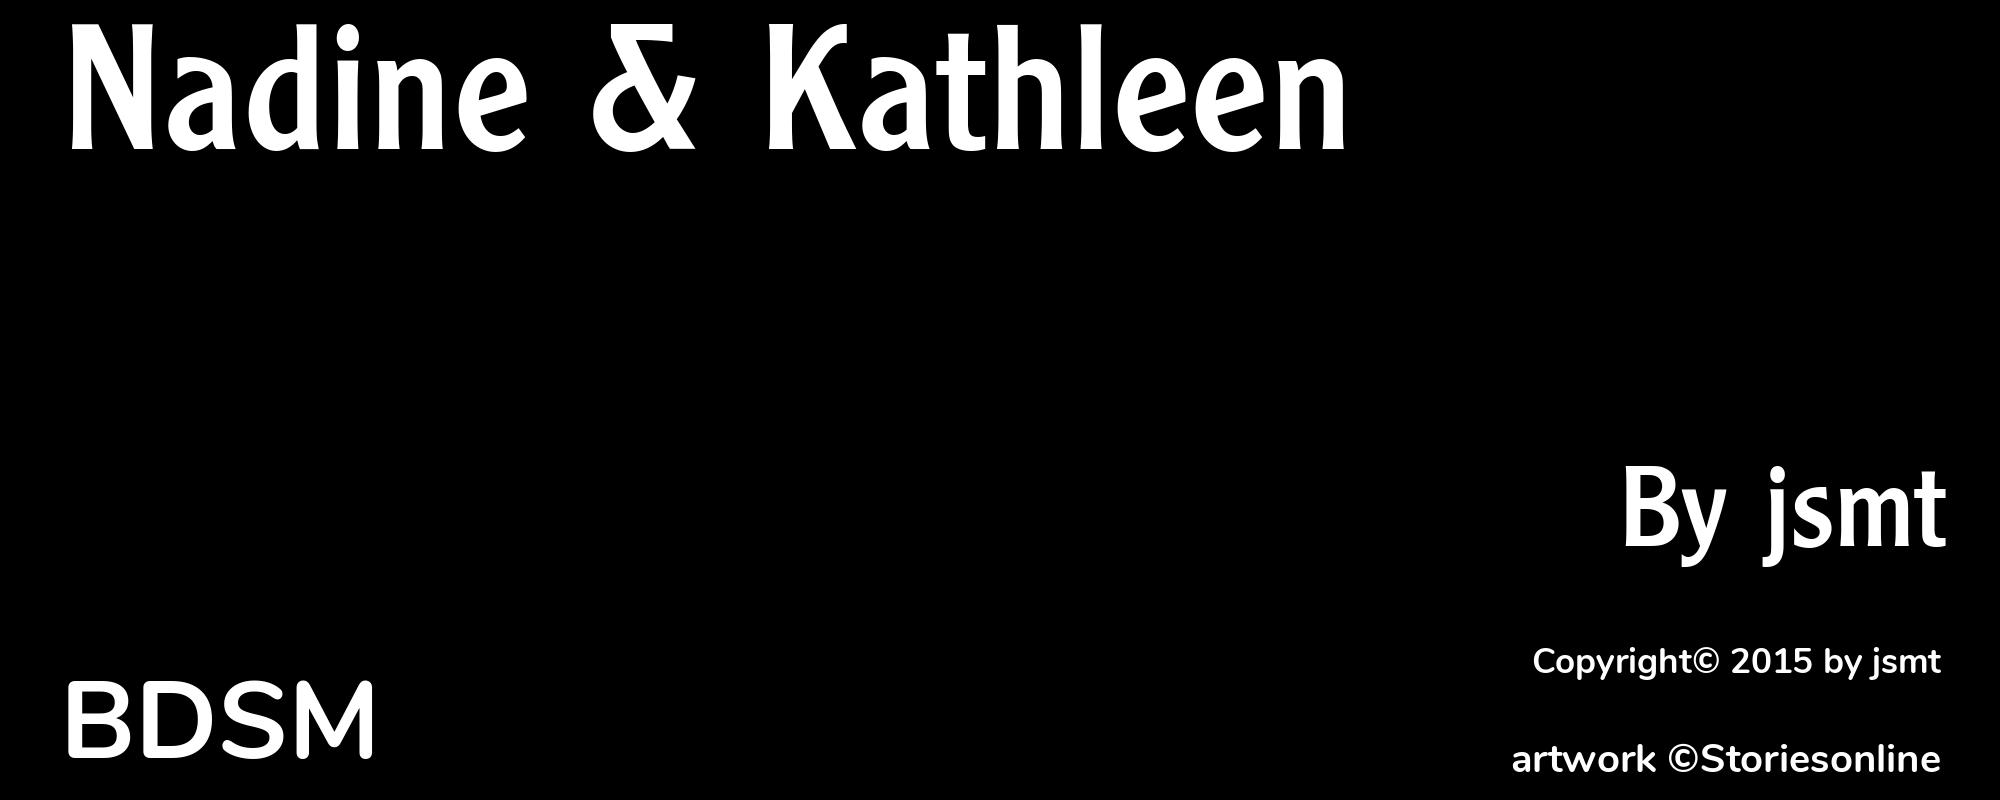 Nadine & Kathleen - Cover